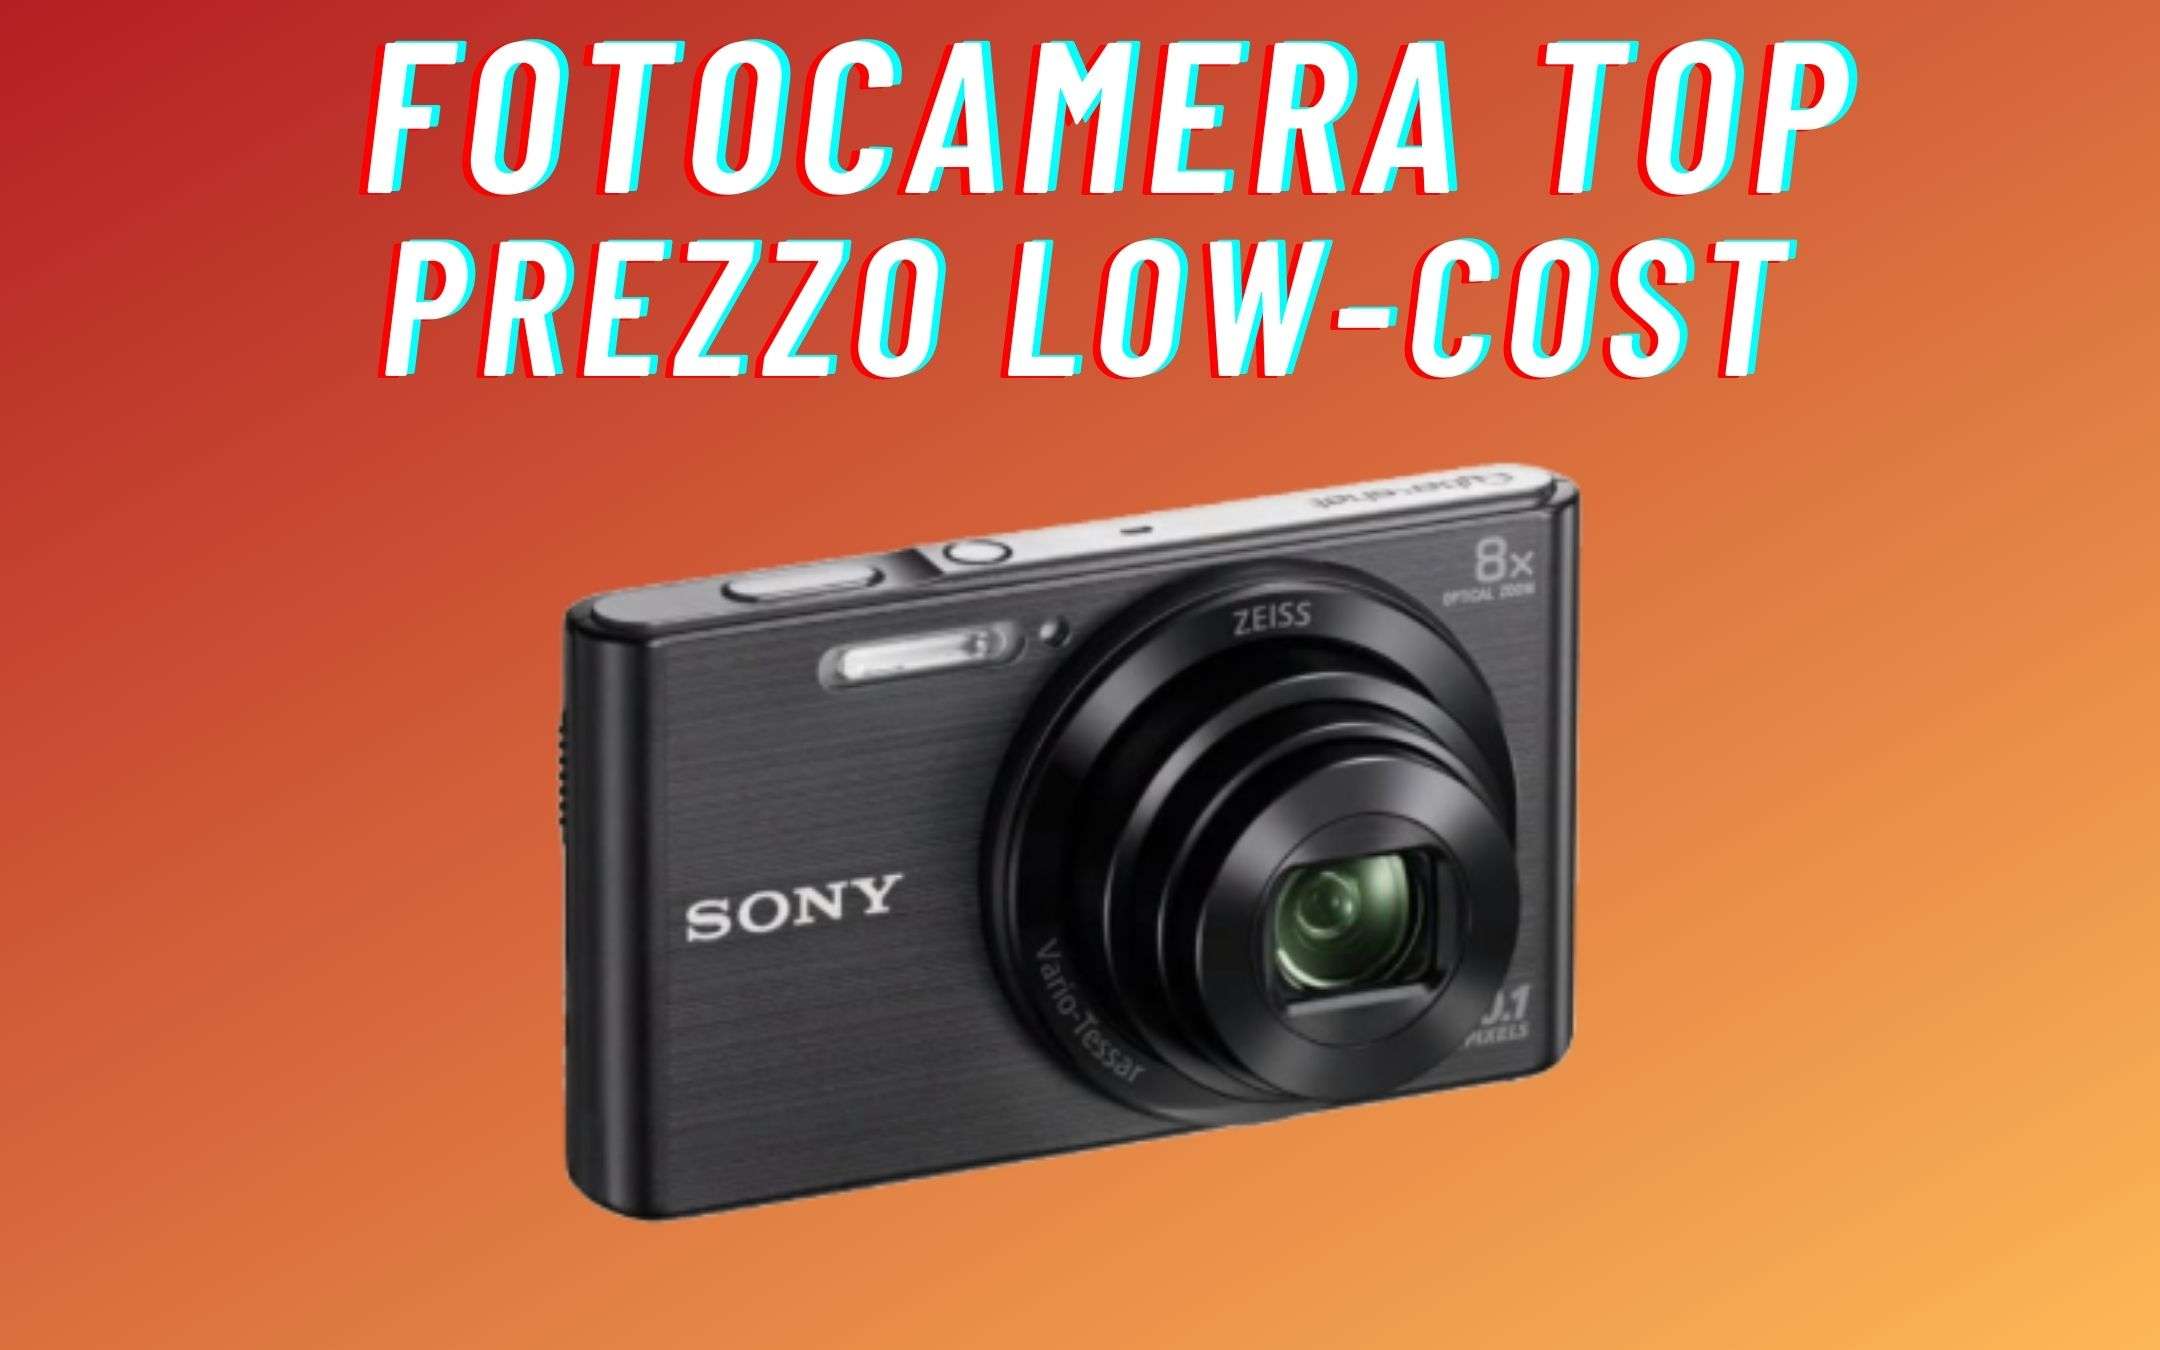 Fotocamera Sony TOP, prezzo SUPER low-cost (110€)